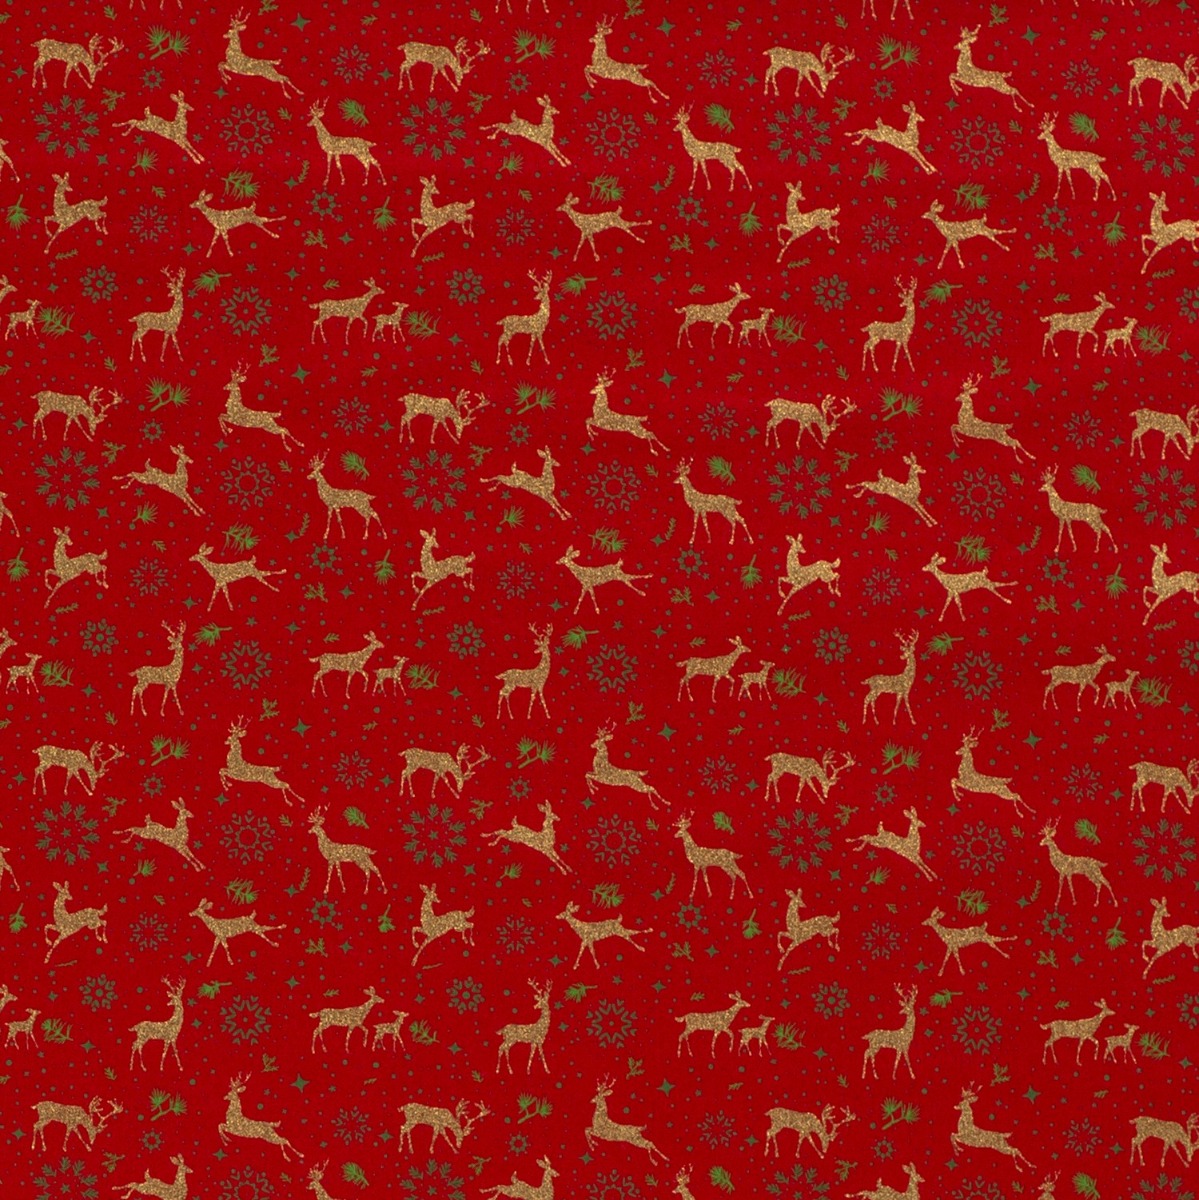 Baumwolle WEIHNACHTEN Golddruck Deer & Snowflakes auf Rot